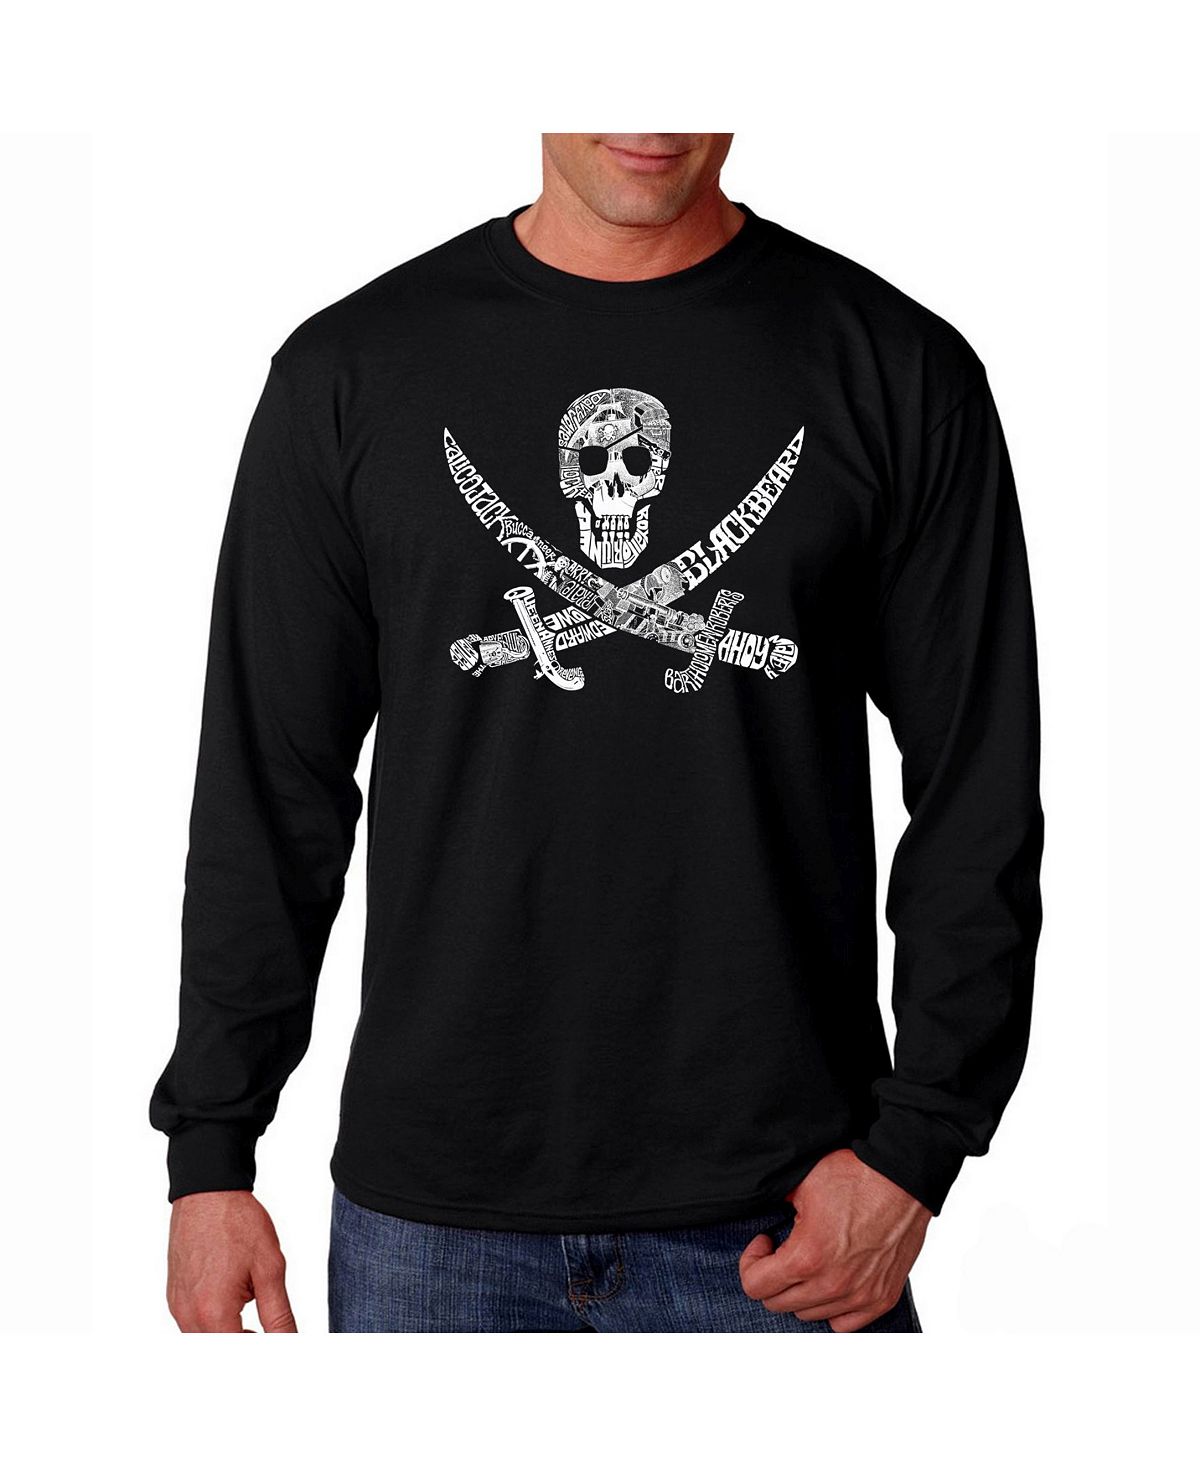 Мужская футболка с длинным рукавом word art - пират LA Pop Art, черный